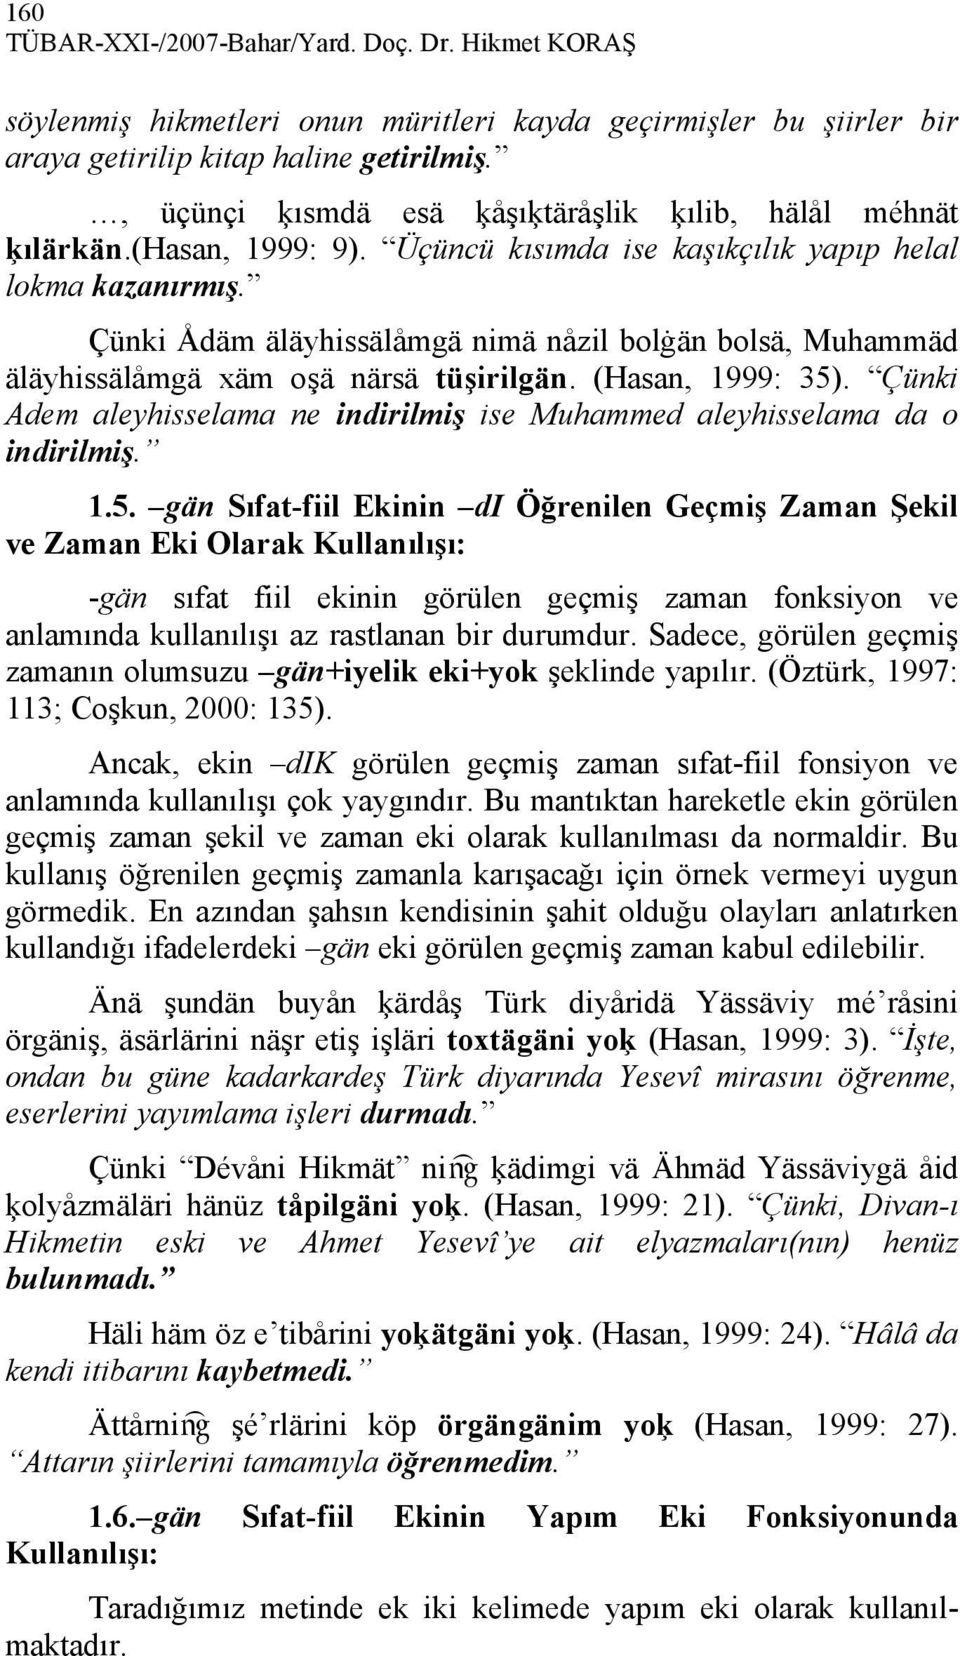 Çünki Ådäm äläyhissälåmgä nimä nåzil bolġän bolsä, Muhammäd äläyhissälåmgä xäm oşä närsä tüşirilgän. (Hasan, 1999: 35).